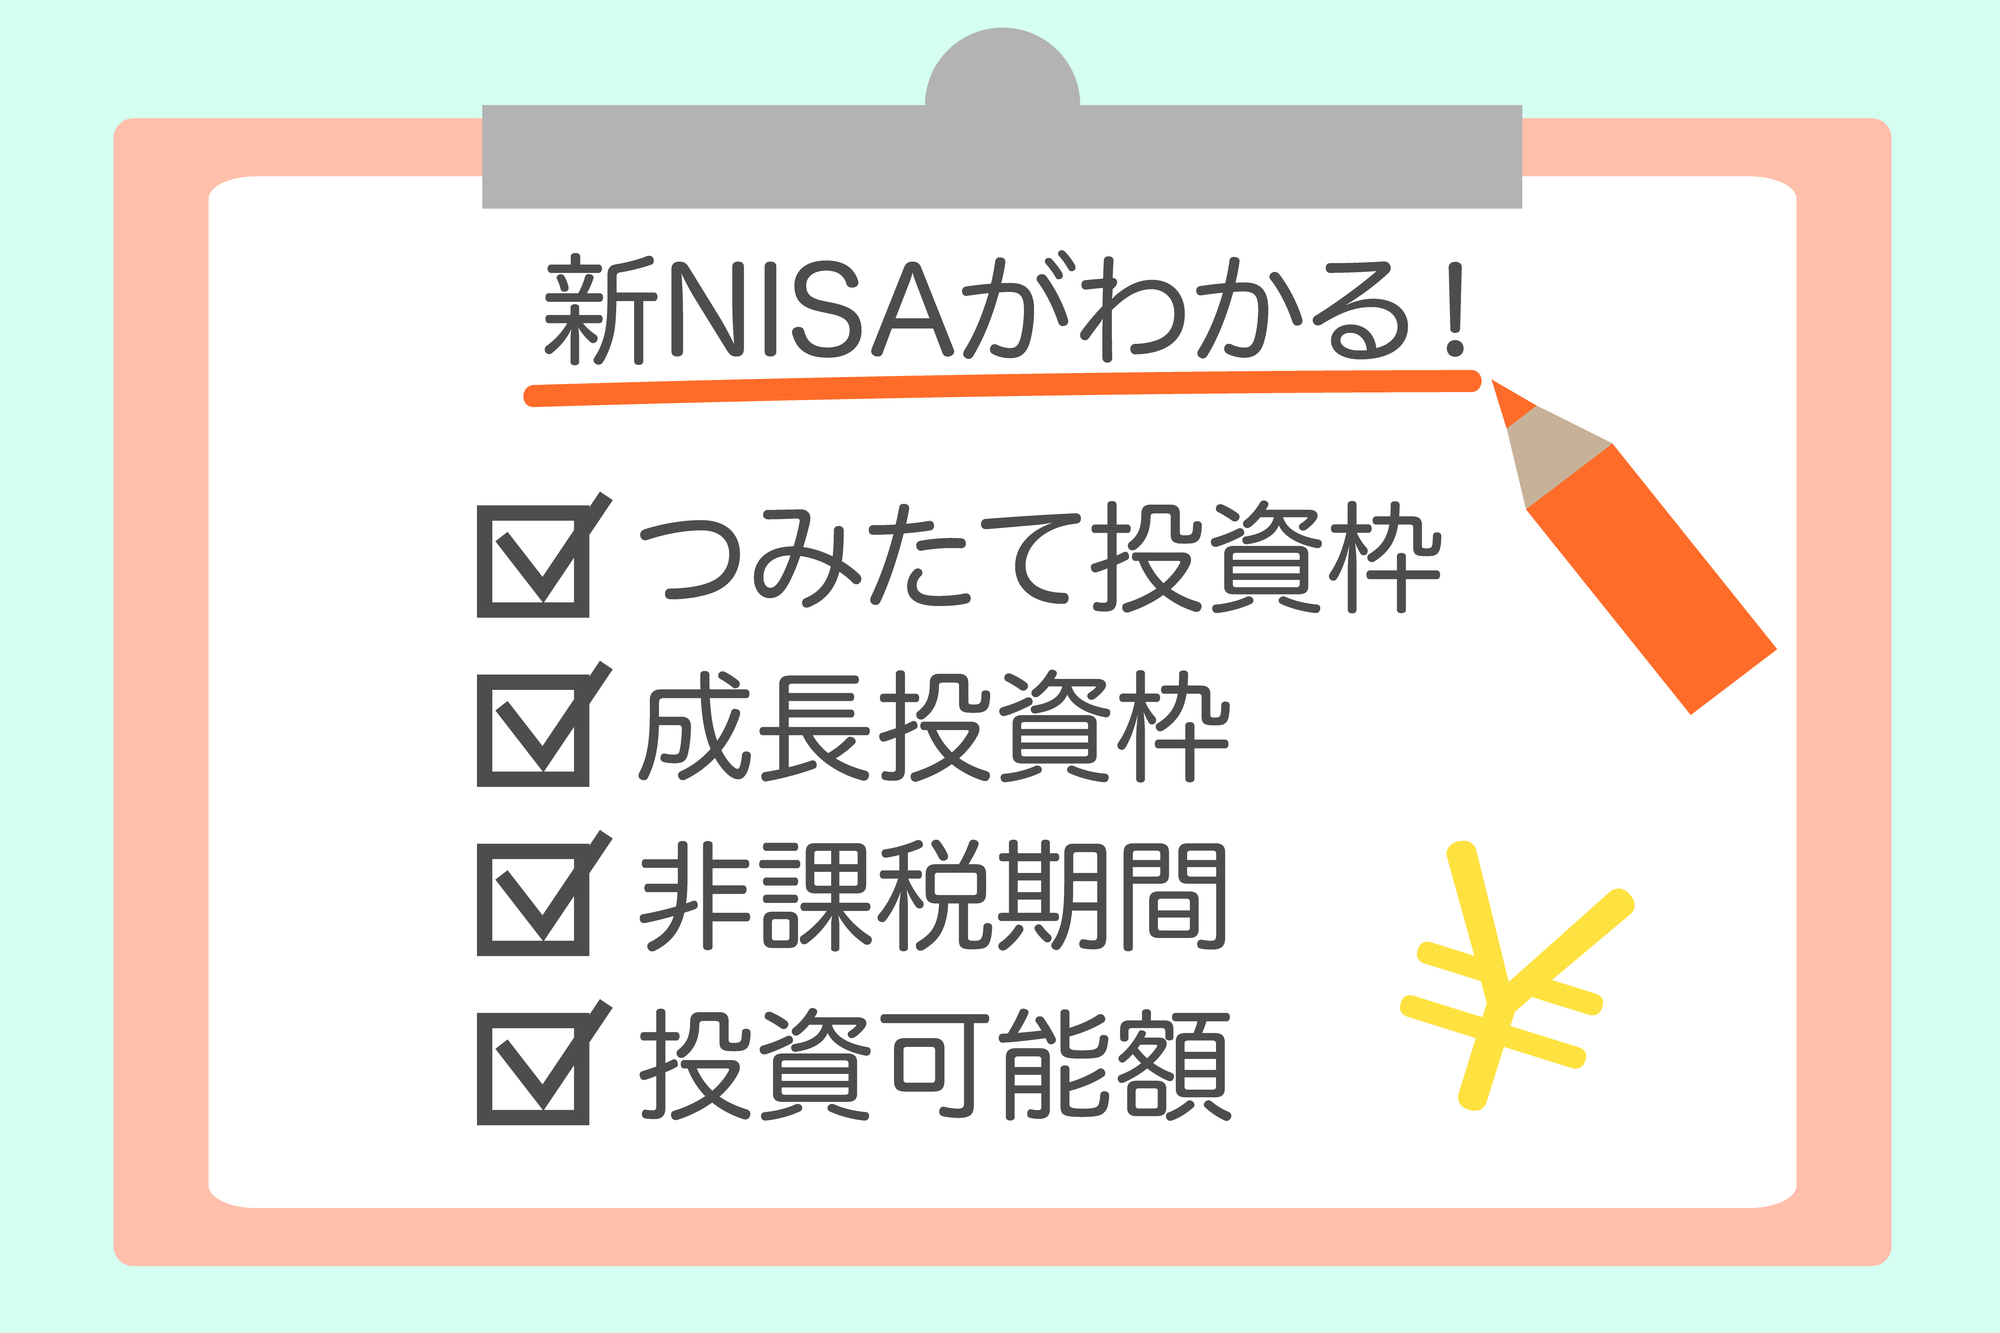 NISAと新NISAがわかる